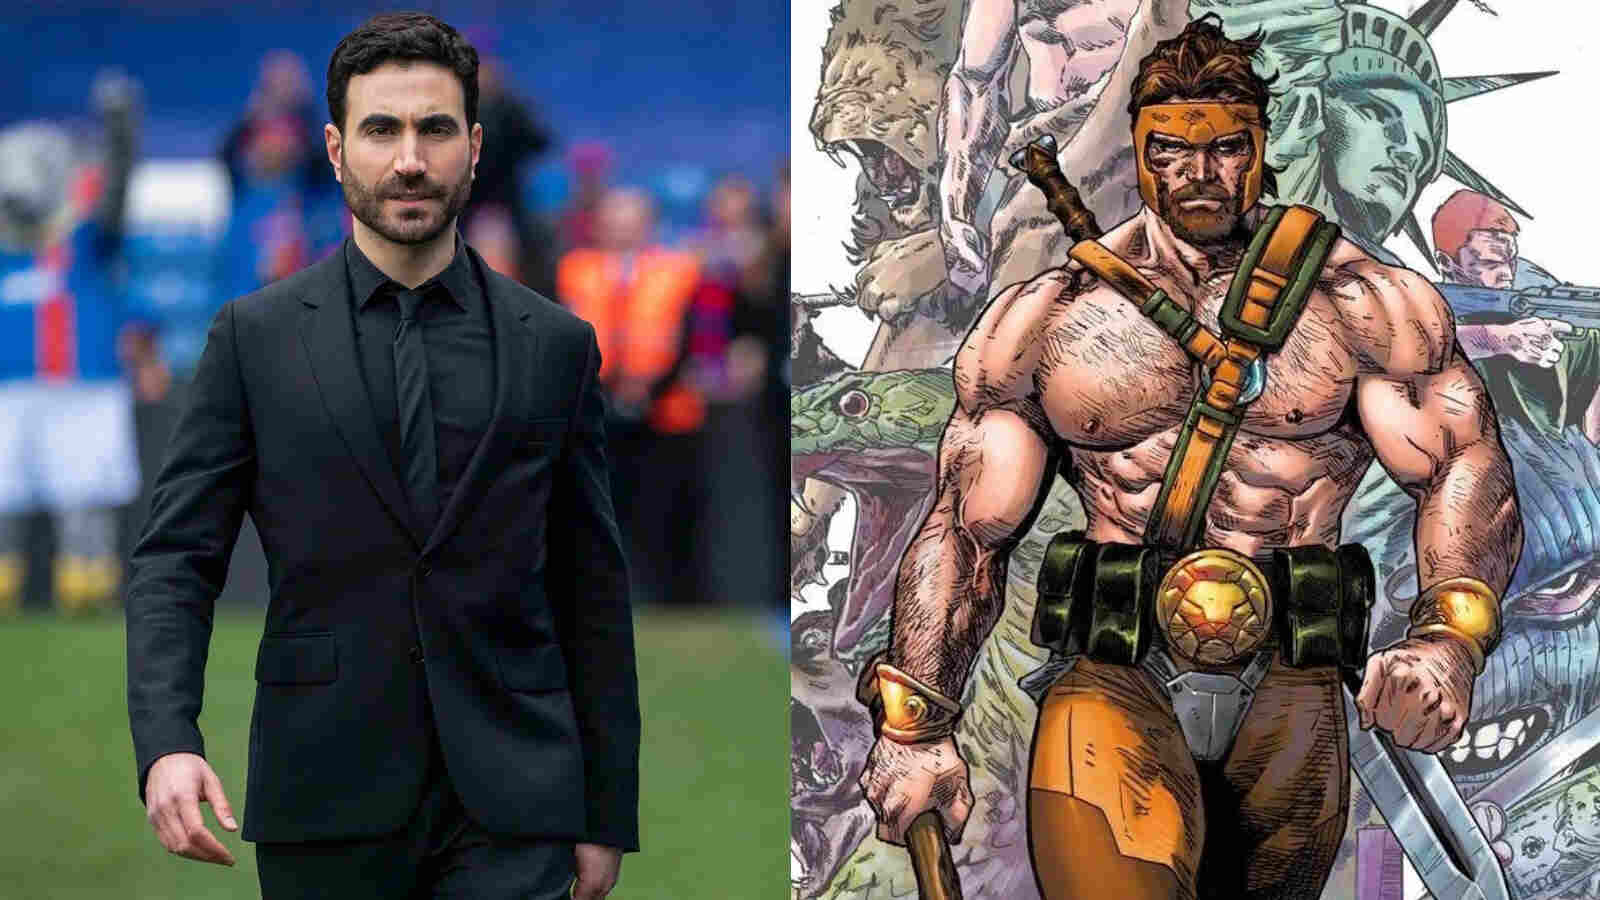 Brett Goldstein will appear as Hercules in Thor 4